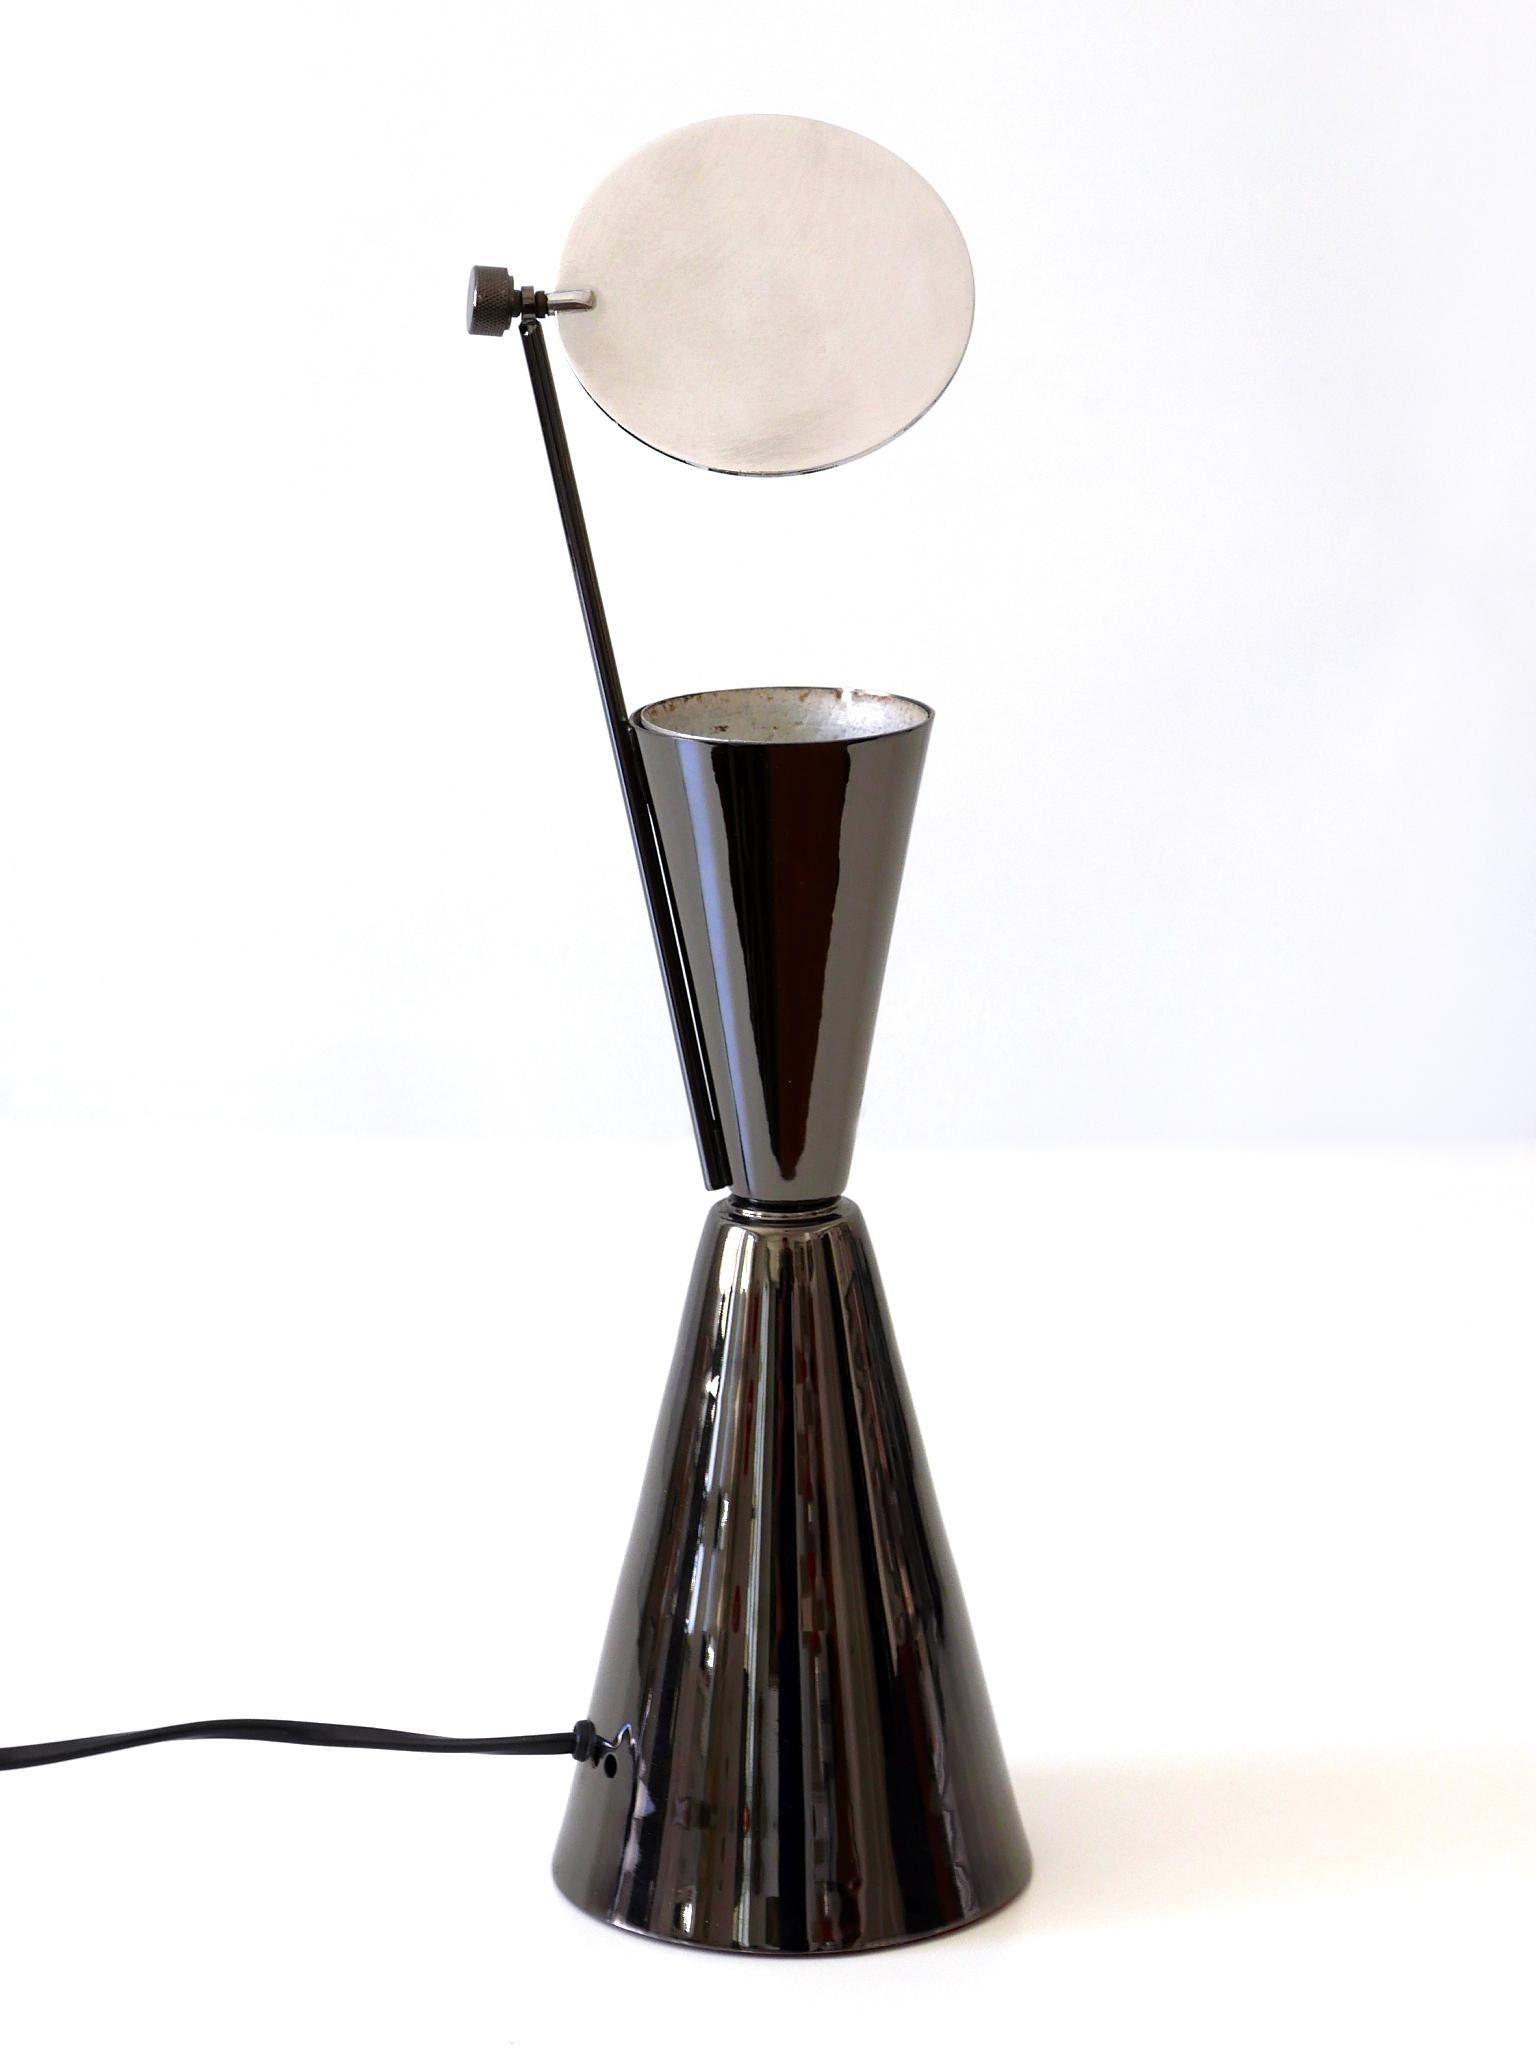 Spanish Elegant Modernist Diabolo Table Lamp 1980s Spain For Sale